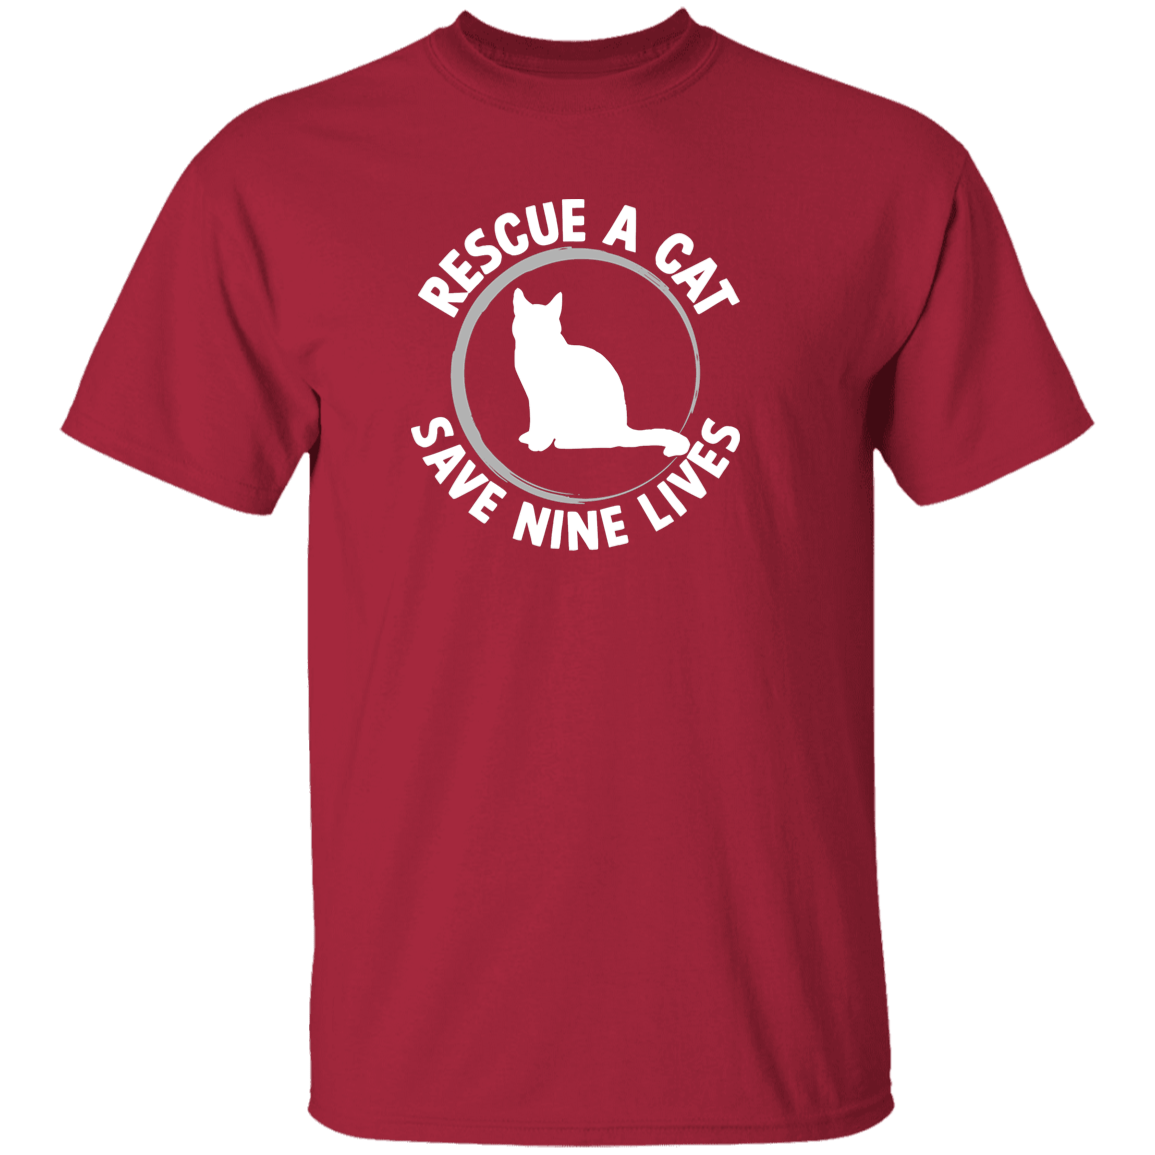 Save Nine Lives - T Shirt.